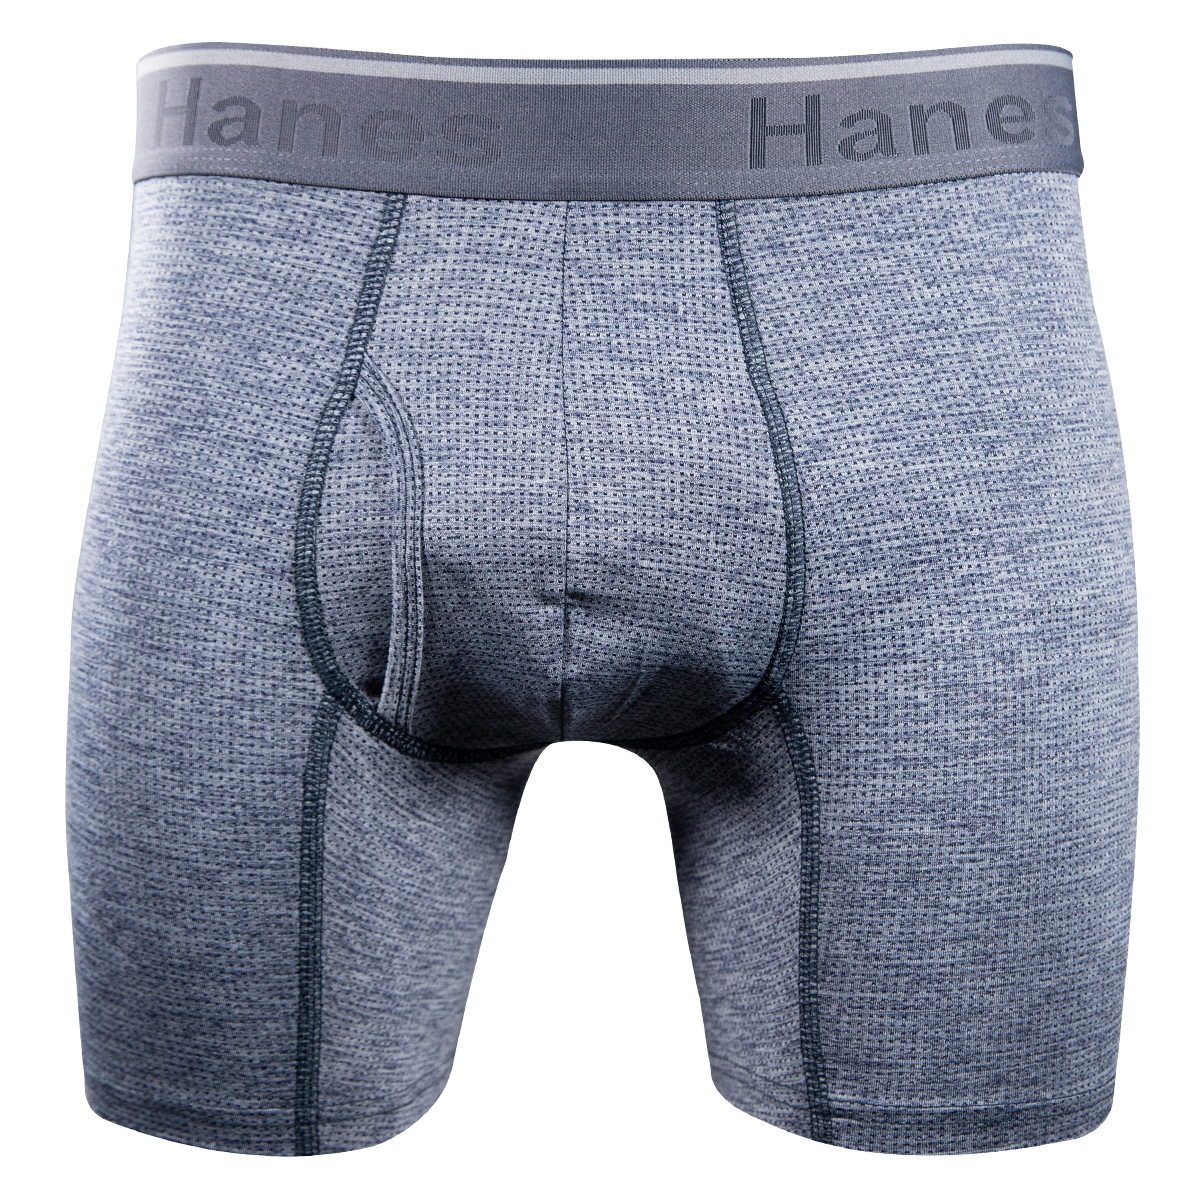 Hanes Men's 3 Pack Comfort Flex Fit Breathable Stretch Mesh Boxer Briefs (S01)